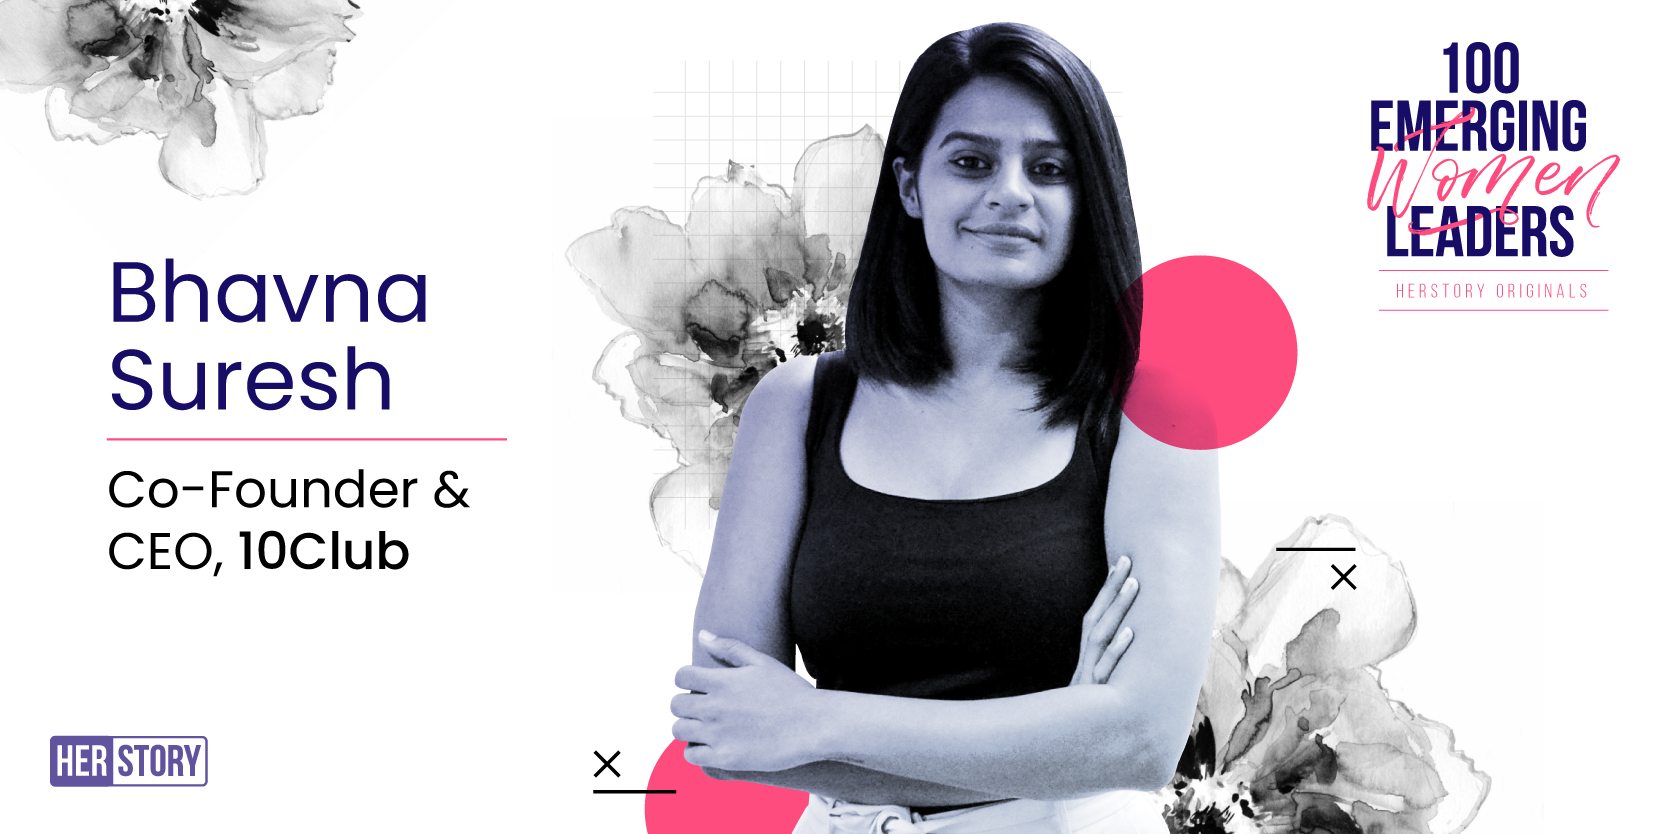 [100 Emerging Women Leaders] Meet serial entrepreneur Bhavna Suresh, whose startup raised $40M in seed round 
